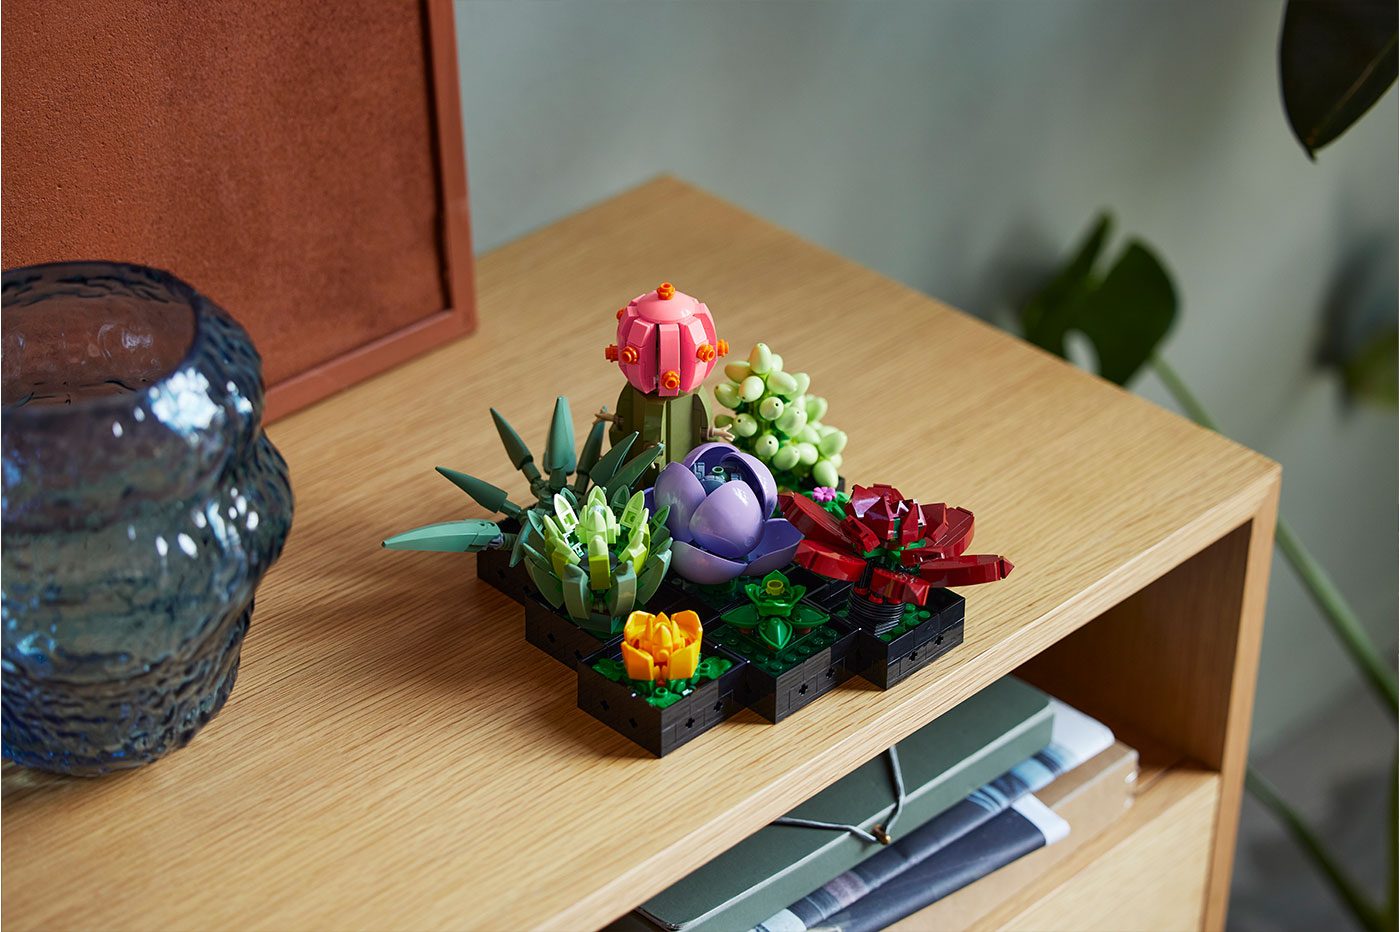 La nouvelle gamme botanique de Lego dévoile un incroyable bouquet de fleurs